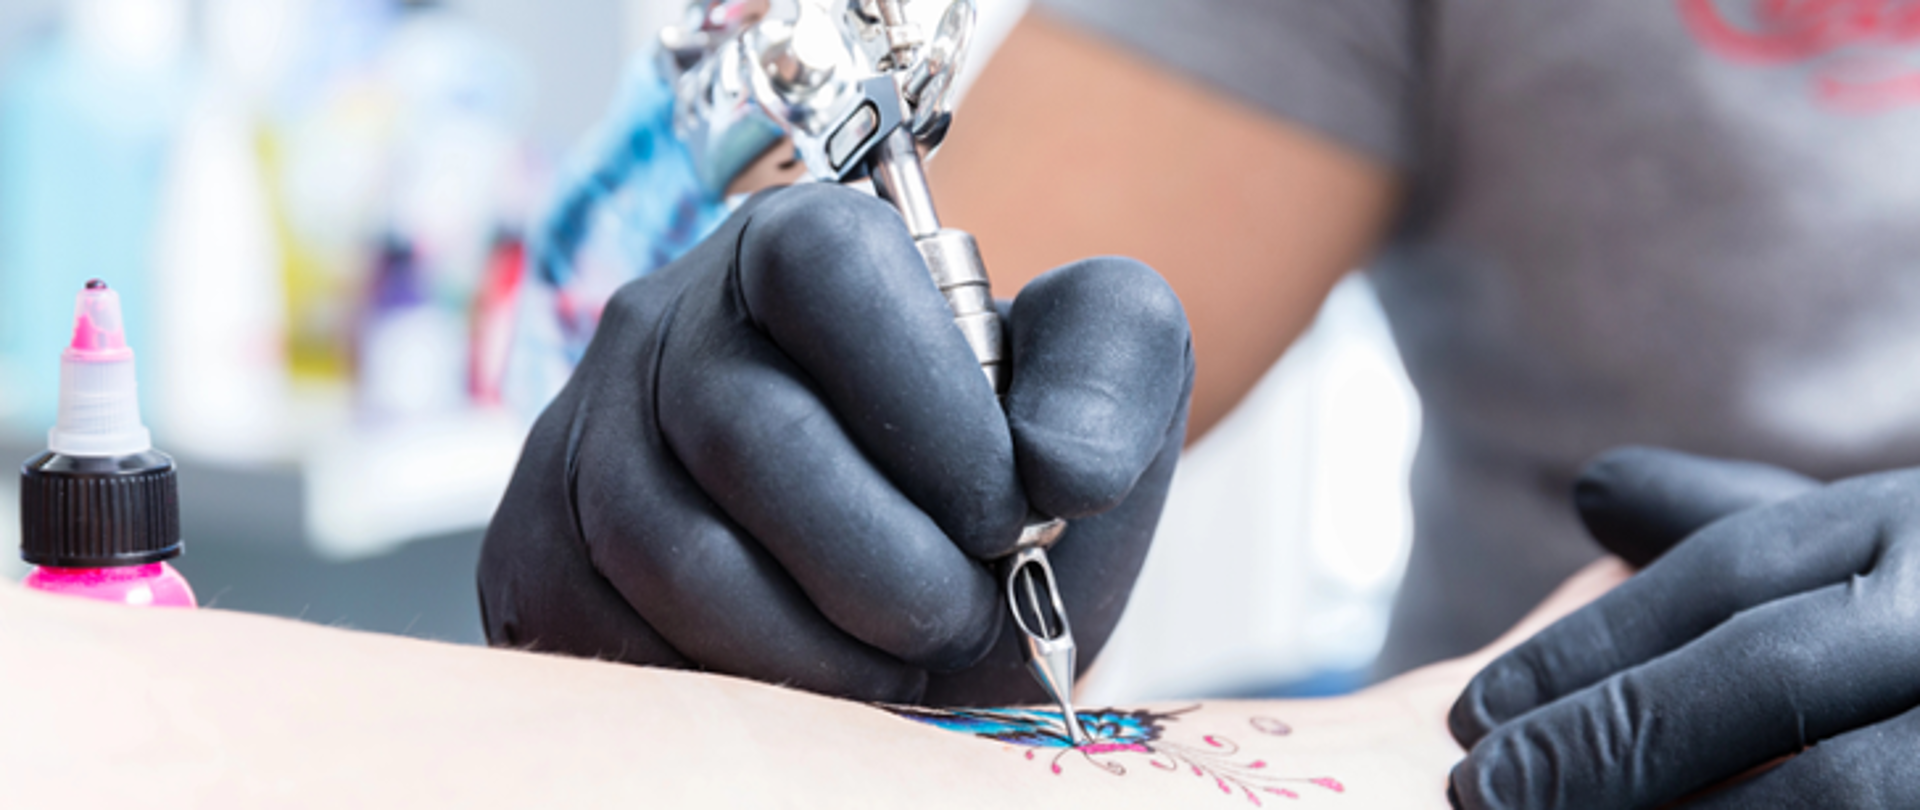 Zdjęcie przedstawia dłonie w rękawiczkach tatuujące wzór na ręku klienta